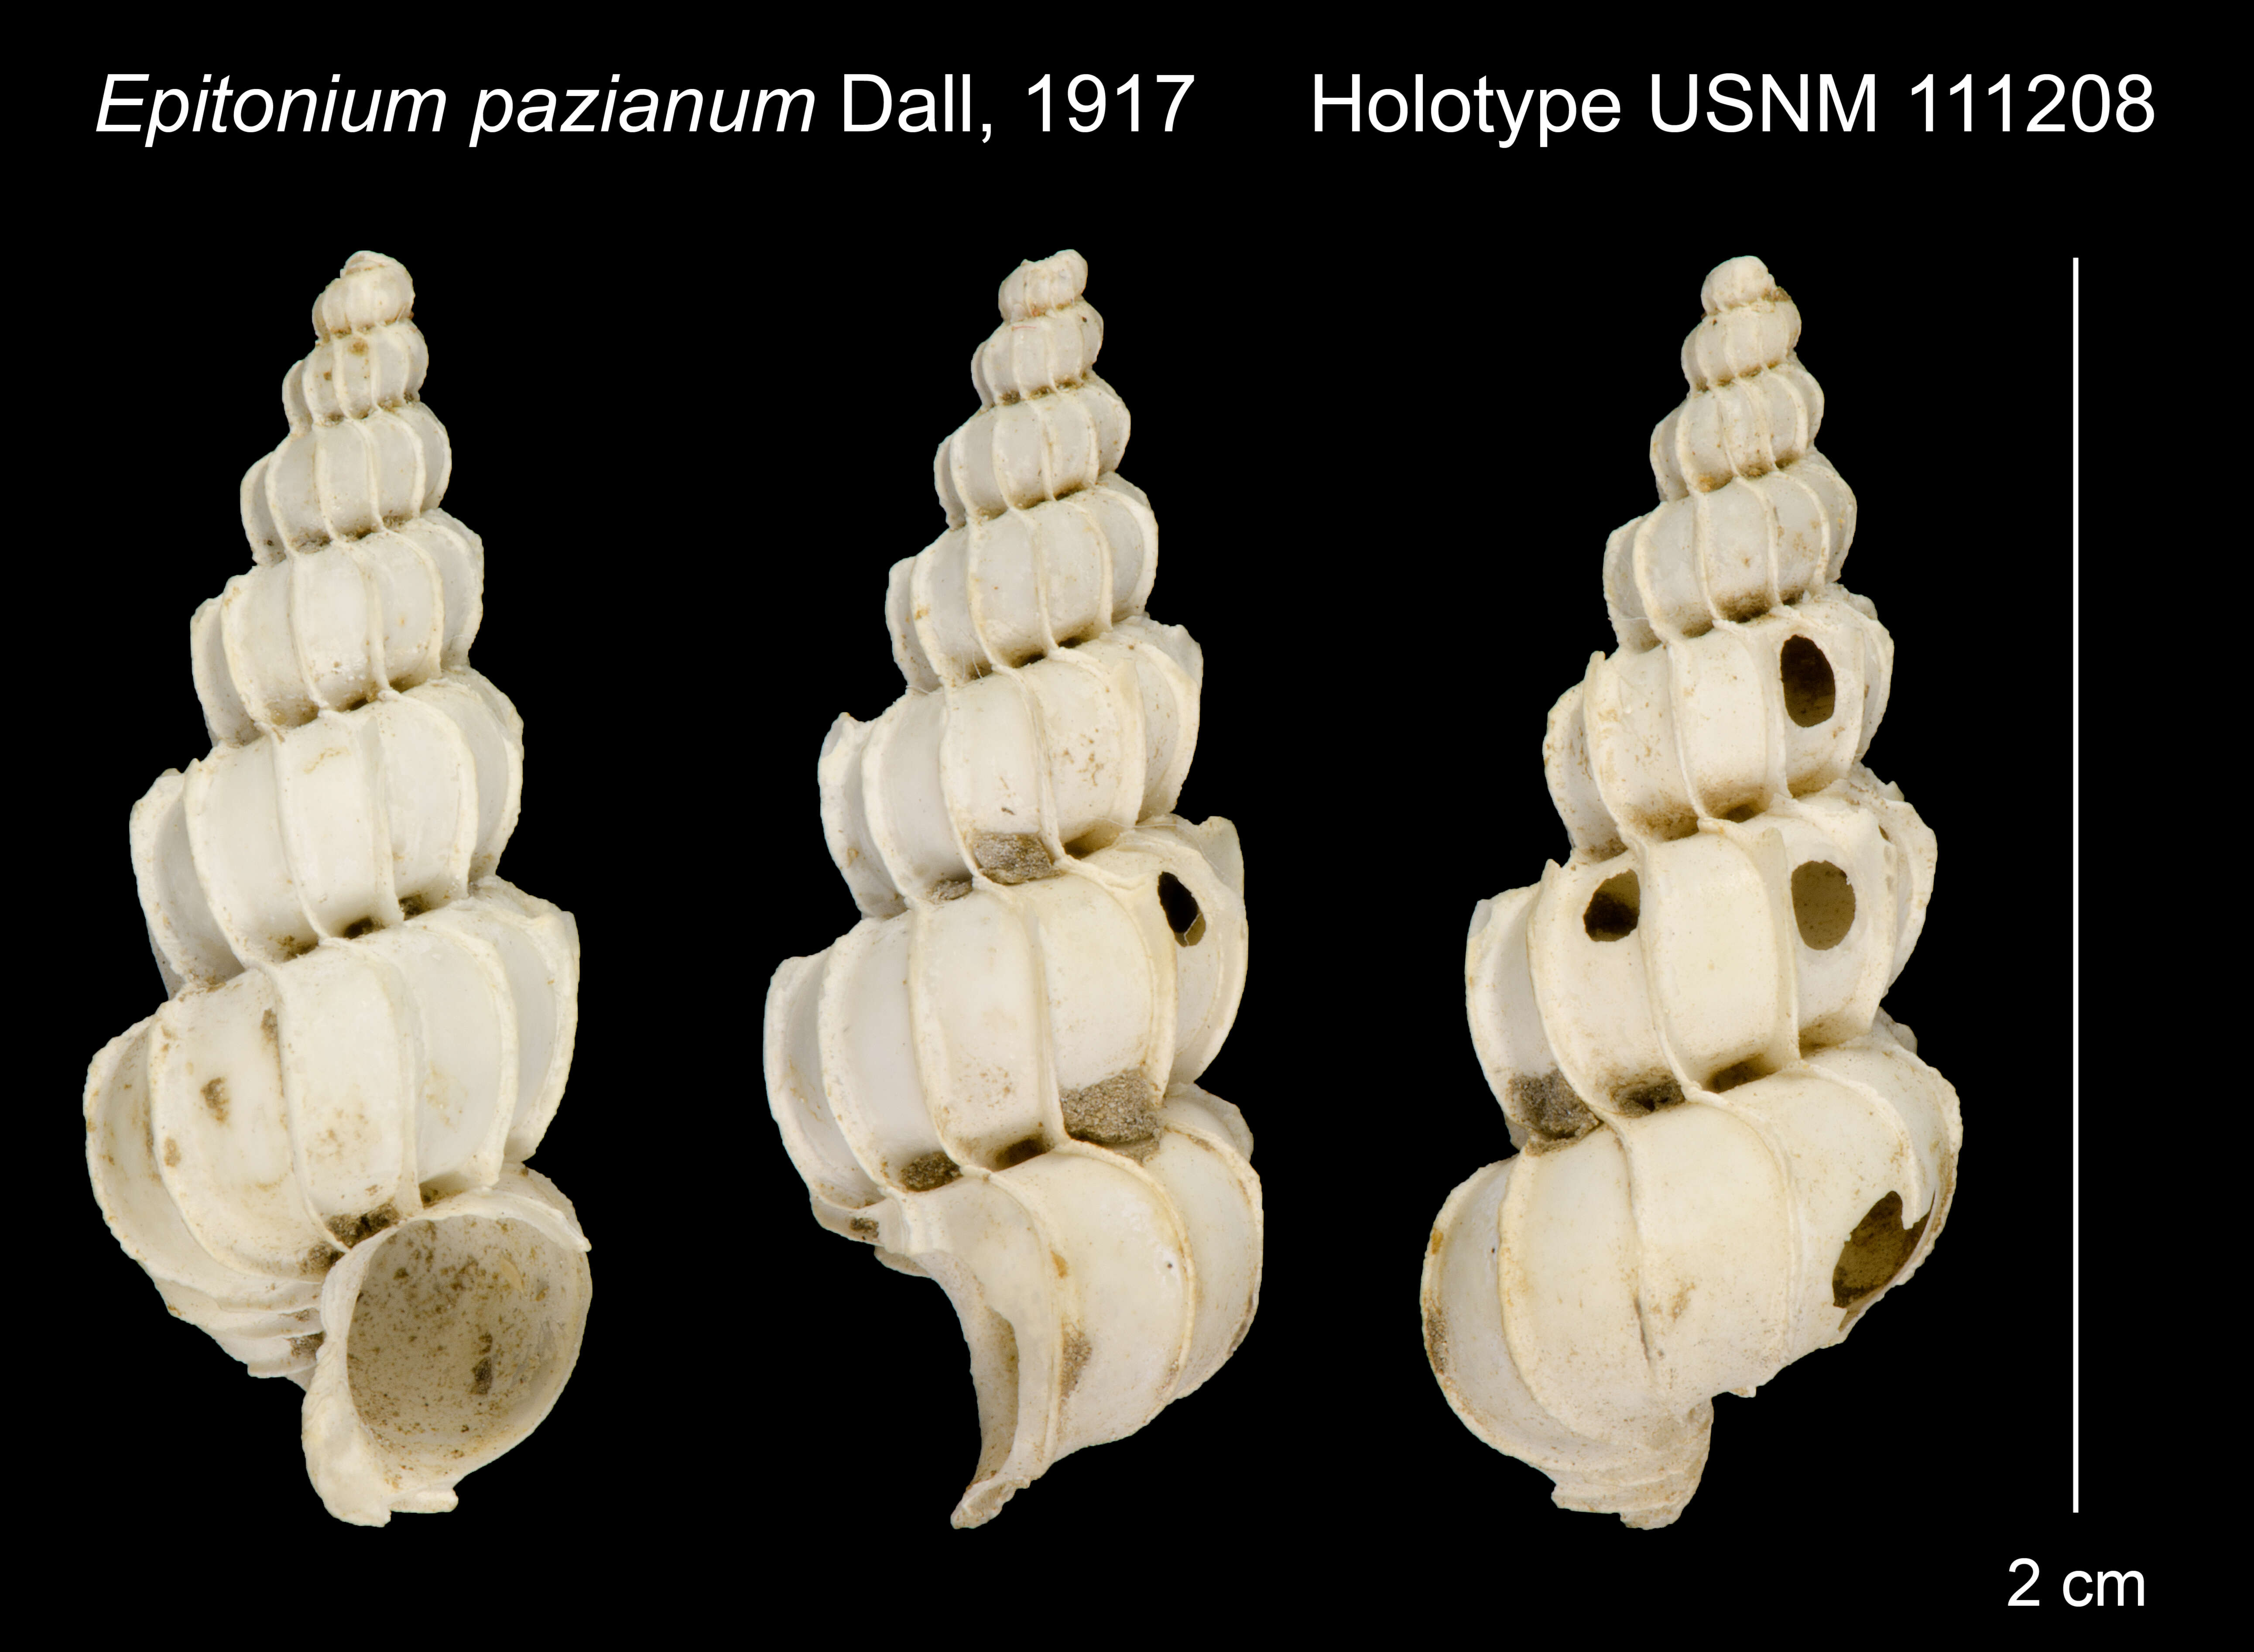 Image of Epitonium pazianum Dall 1917